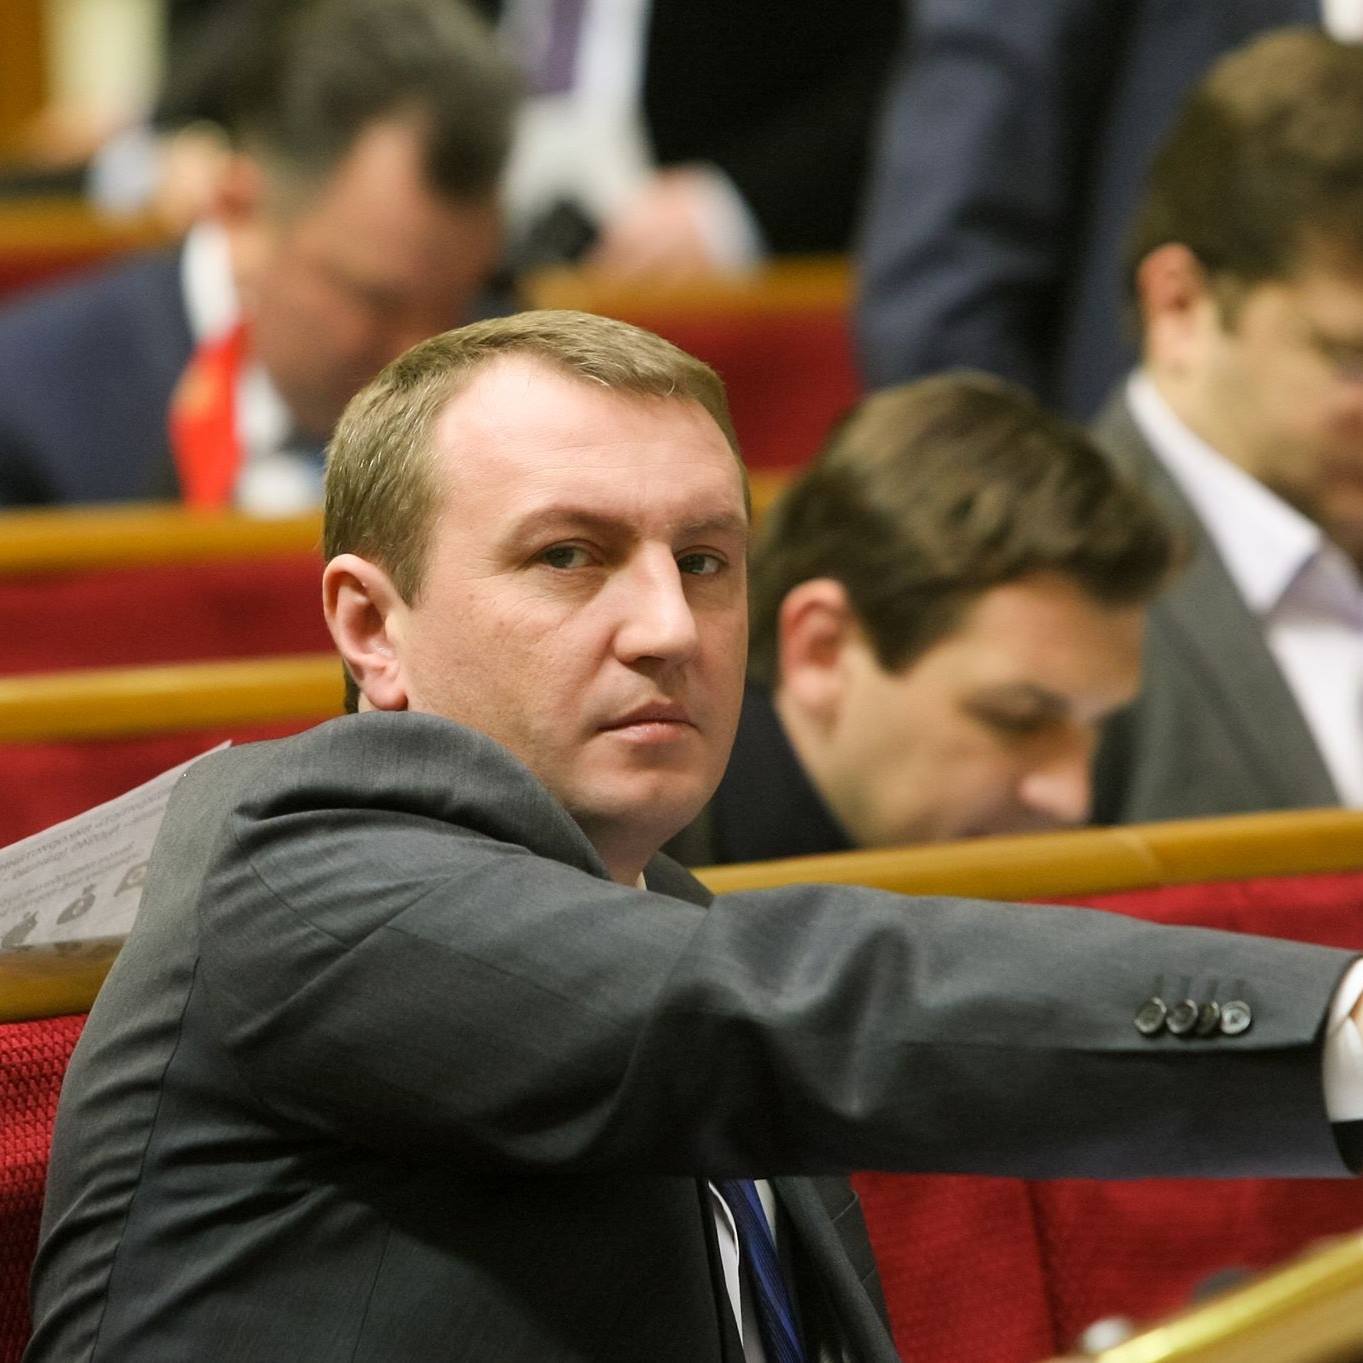 Нардеп Іван Рибак дав зрозуміти:  БПП готовий усувати Яценюка навіть ціною реваншу 'партії регіонів' і руйнування  держави  